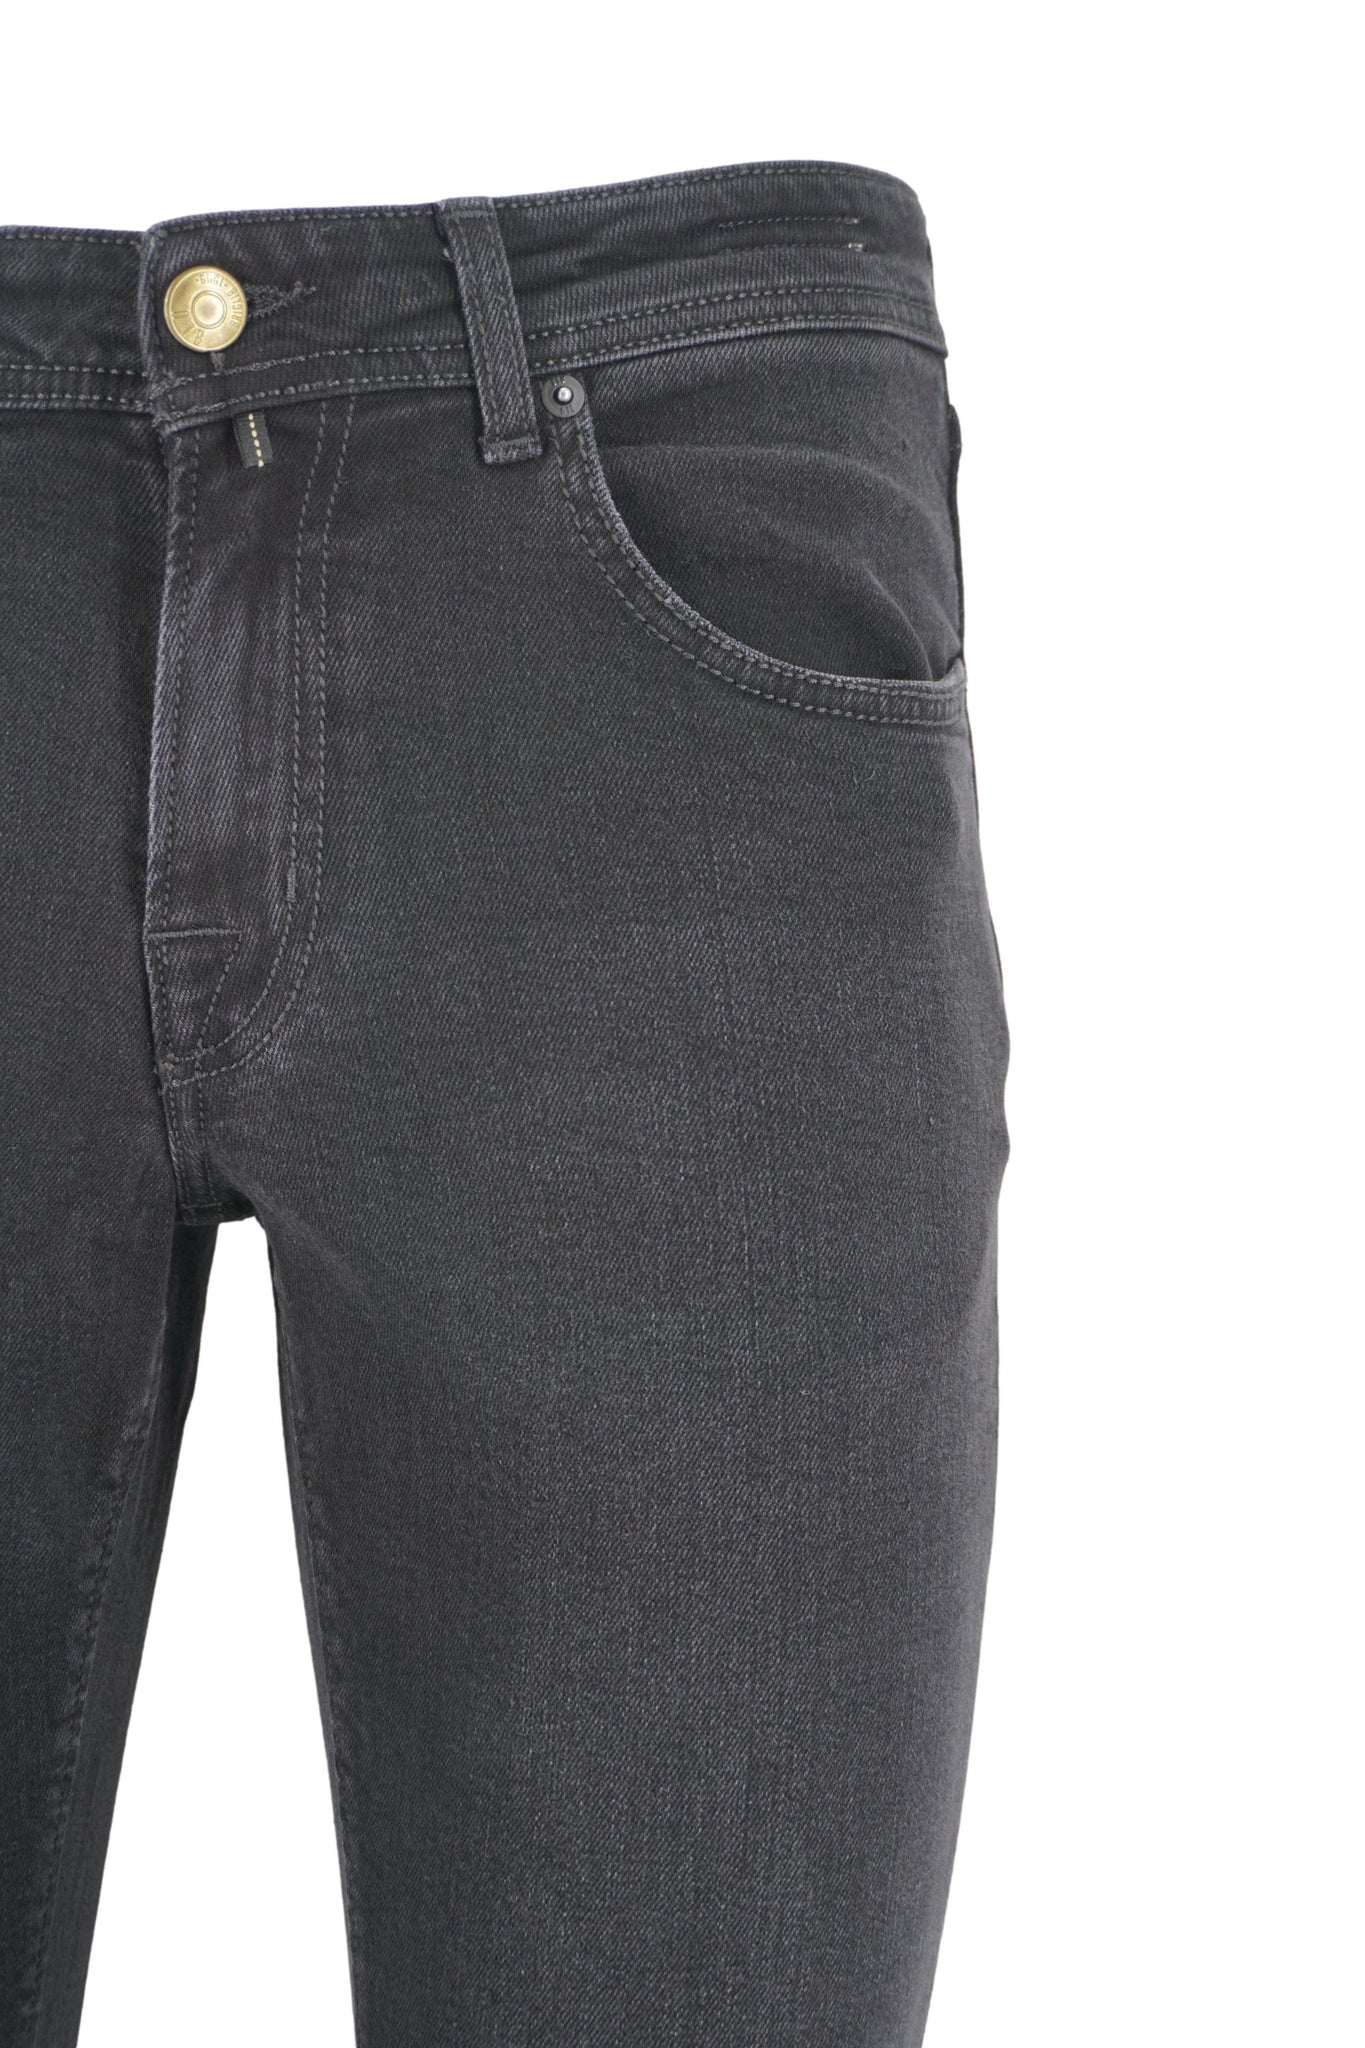 Jeans Cinque Tasche Modello Ribot / Nero - Ideal Moda